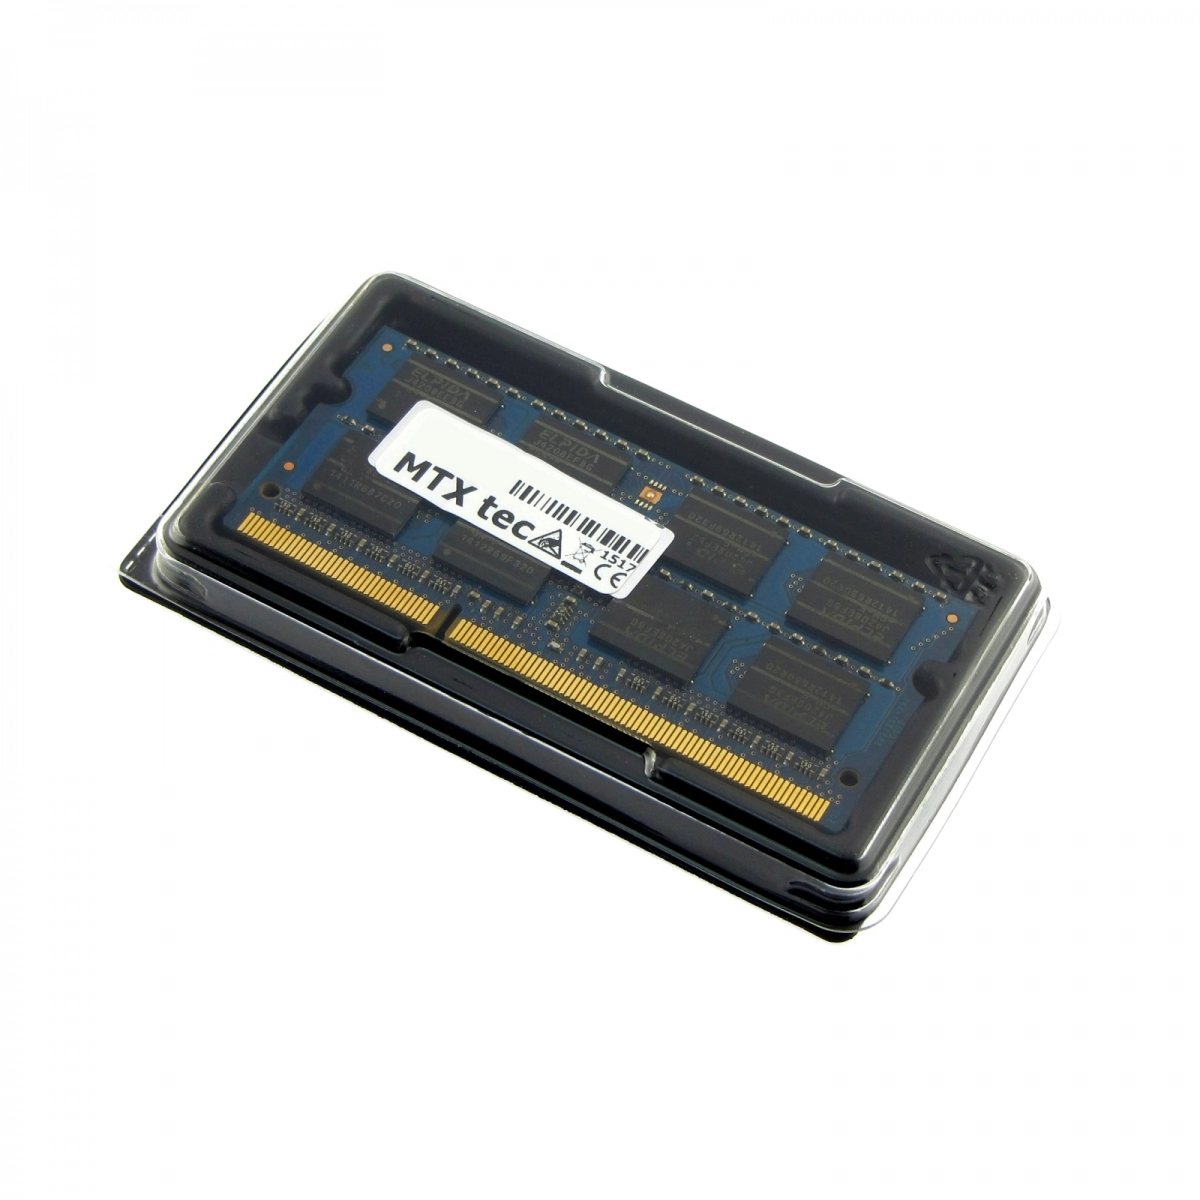 MTXtec Arbeitsspeicher 4 GB RAM für TOSHIBA Portege R700